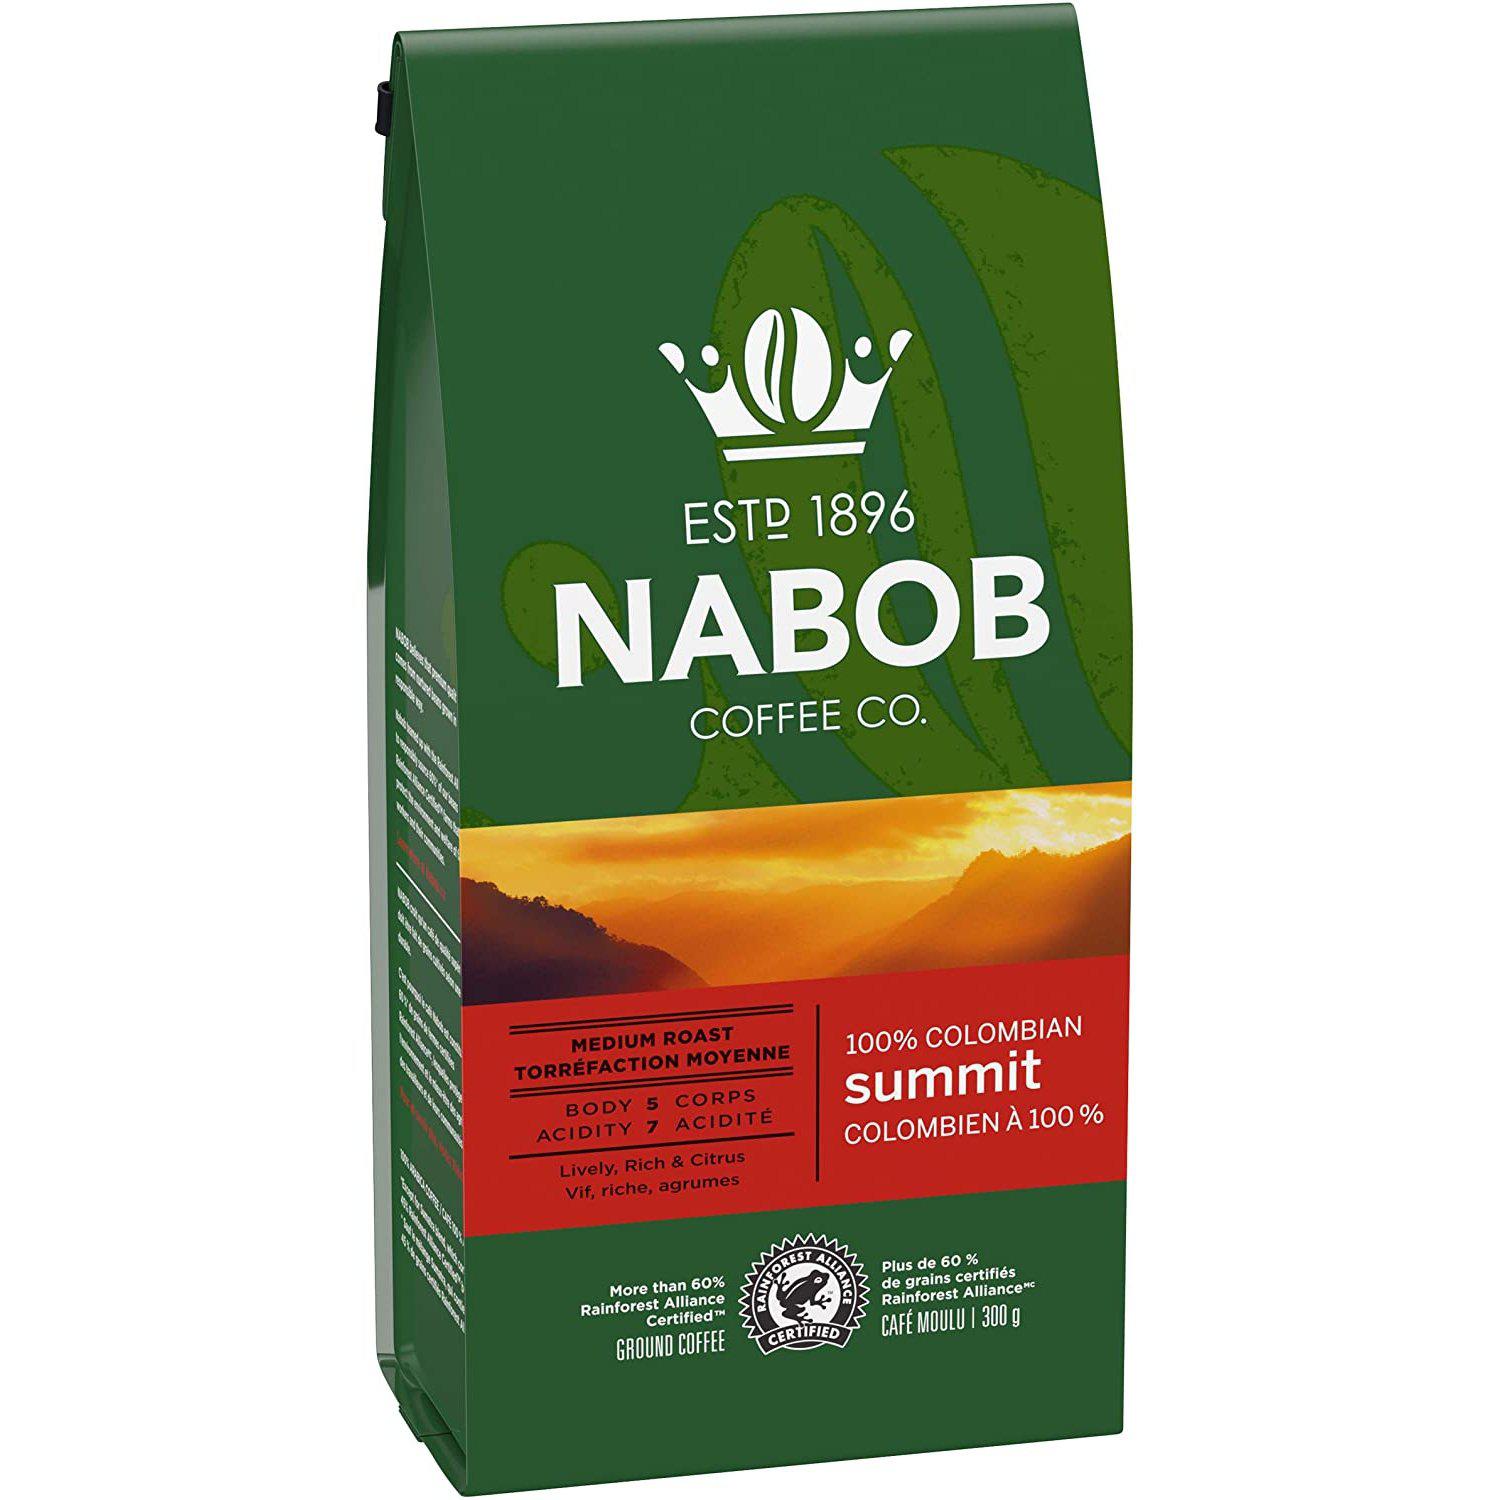 Nabob, Medium Roast, 100% Colombia, Summit 300G